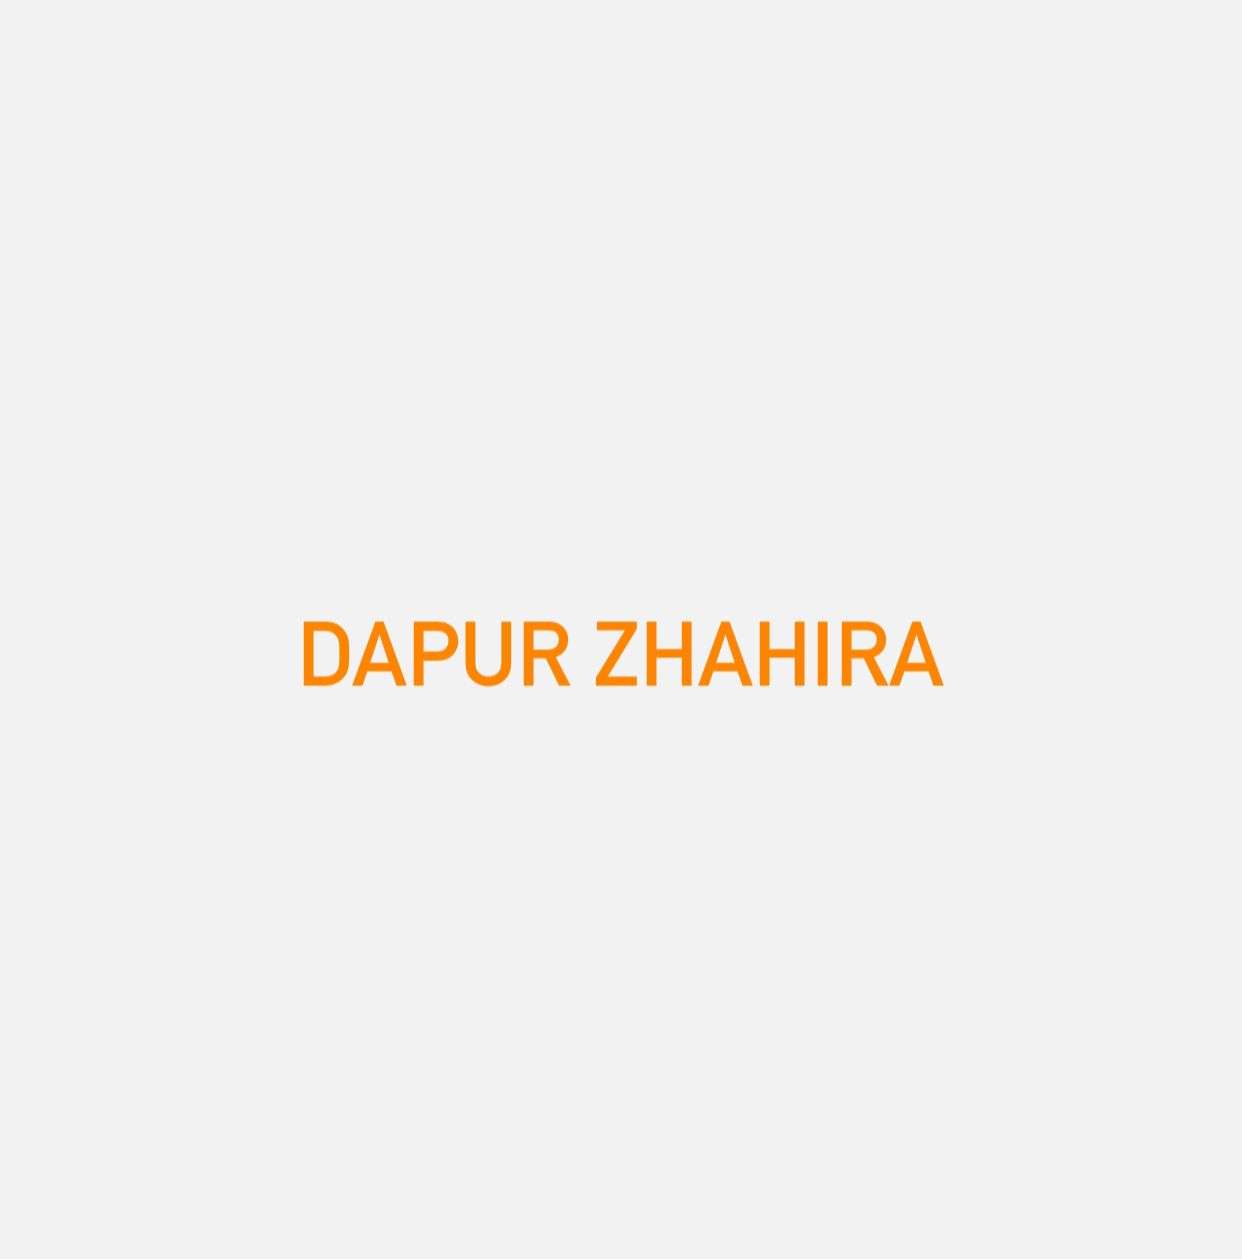 Dapur Zhahira